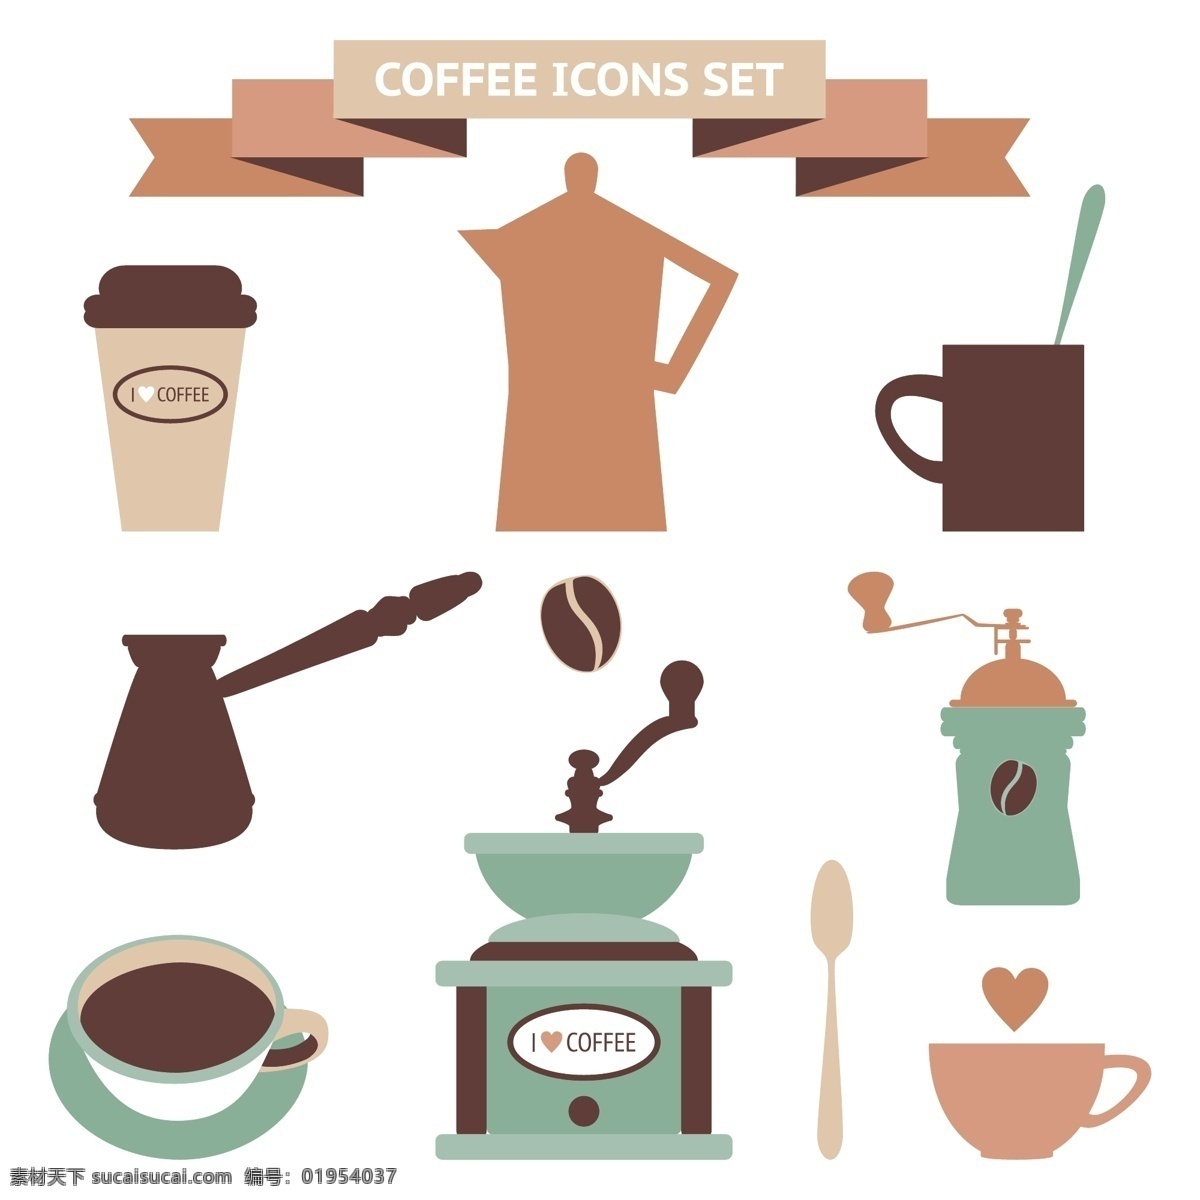 咖啡 图标 咖啡店 标志 咖啡机 咖啡设计 咖啡图标 咖啡标志 咖啡豆 咖啡元素 咖啡店图标 logo coffee 咖啡商标 vi icon 小图标 图标设计 logo设计 标志设计 标识设计 矢量设计 餐饮美食 生活百科 矢量